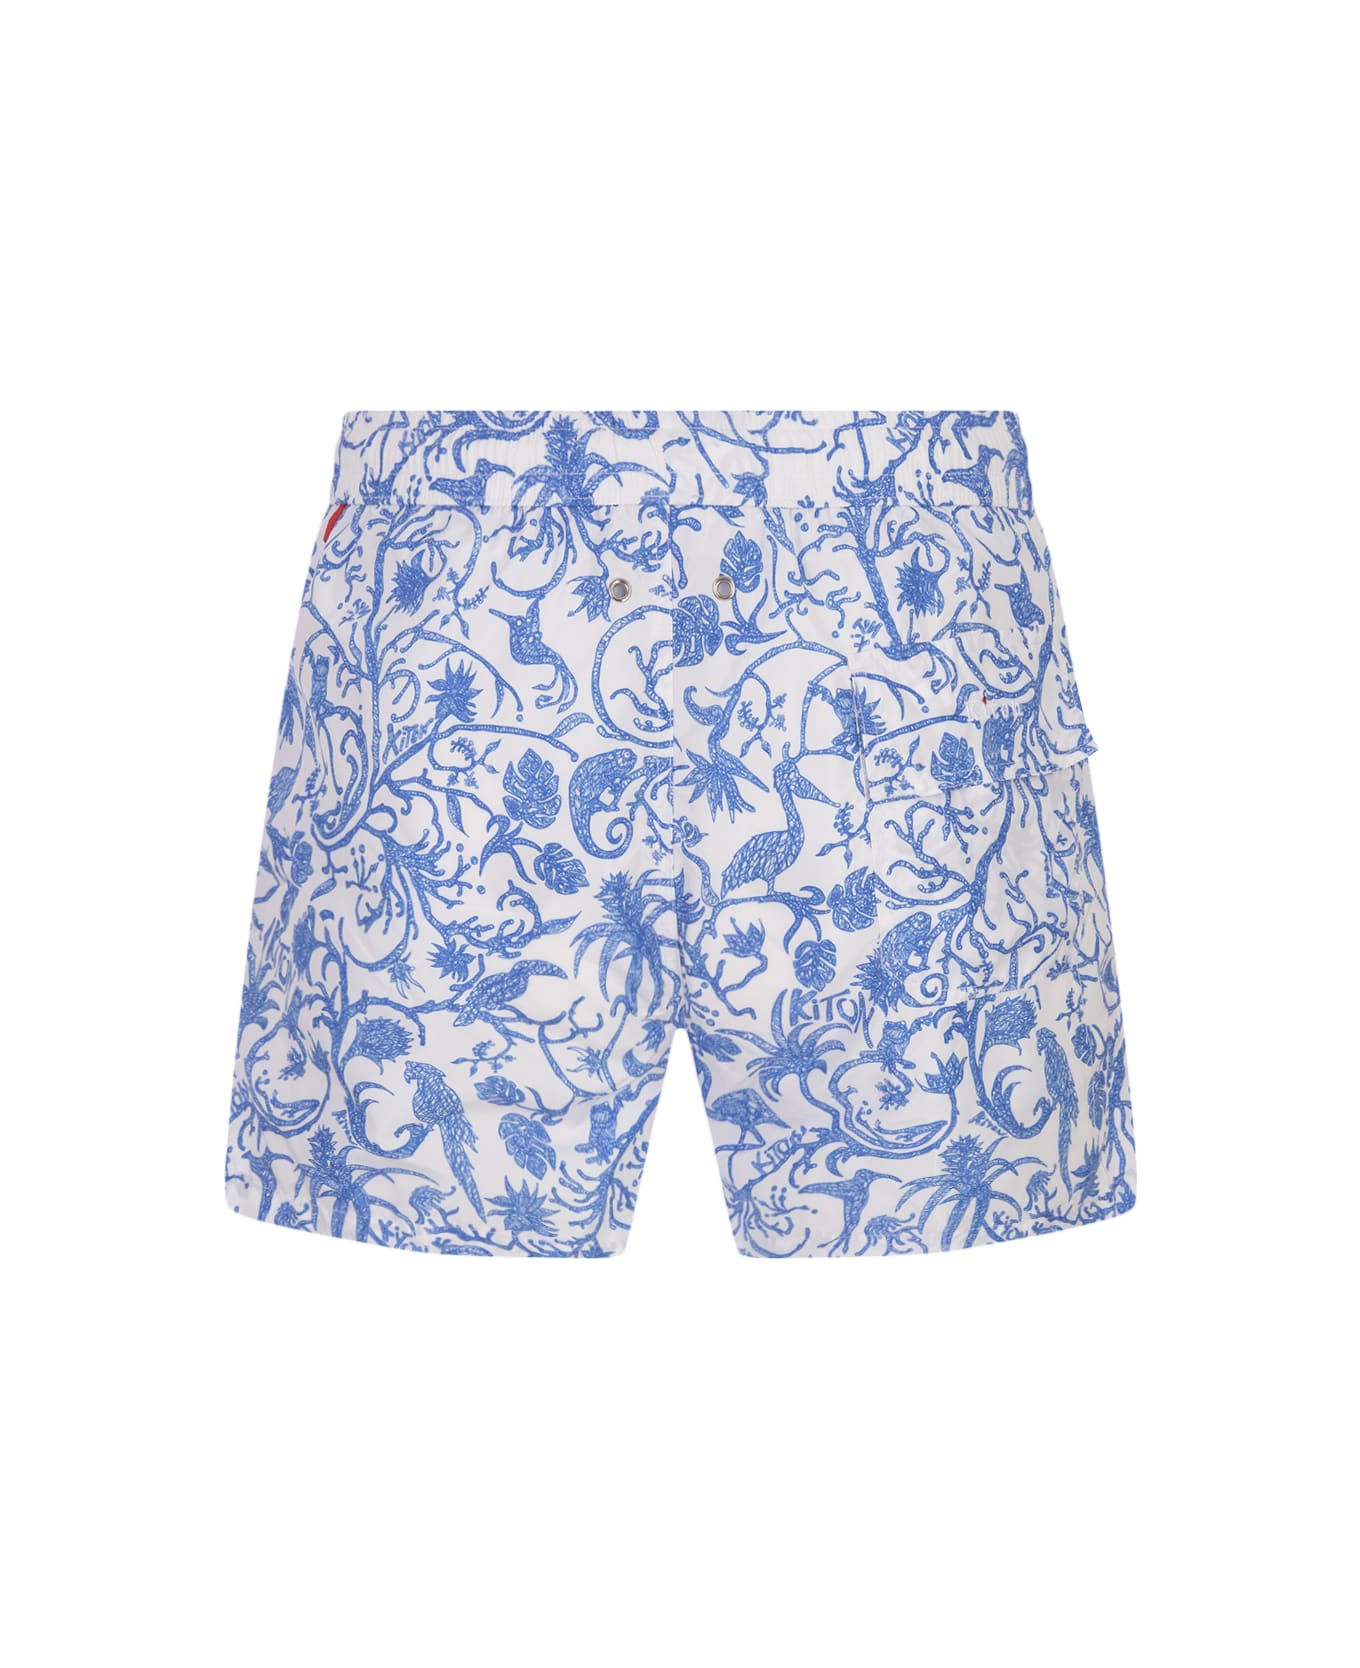 Kiton White Swim Shorts With Blue Fantasy Print - White スイムトランクス